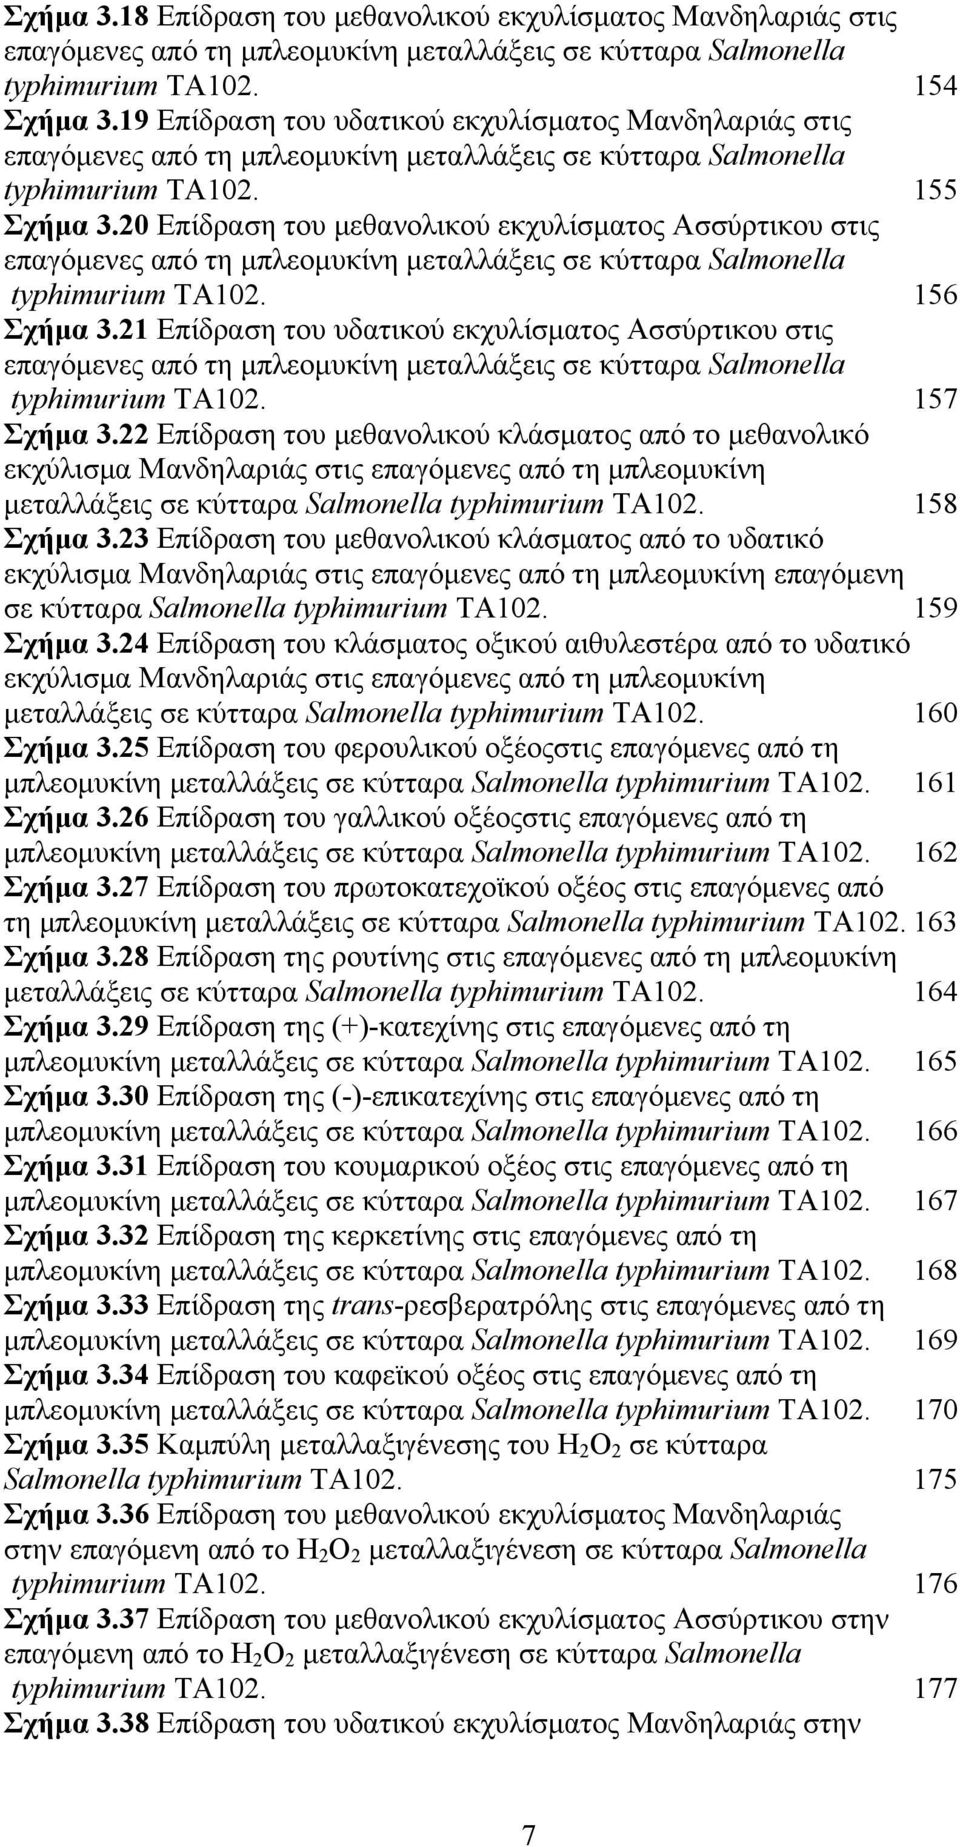 20 Επίδραση του µεθανολικού εκχυλίσµατος Ασσύρτικου στις επαγόµενες από τη µπλεοµυκίνη µεταλλάξεις σε κύτταρα Salmonella typhimurium TA102. 156 Σχήµα 3.